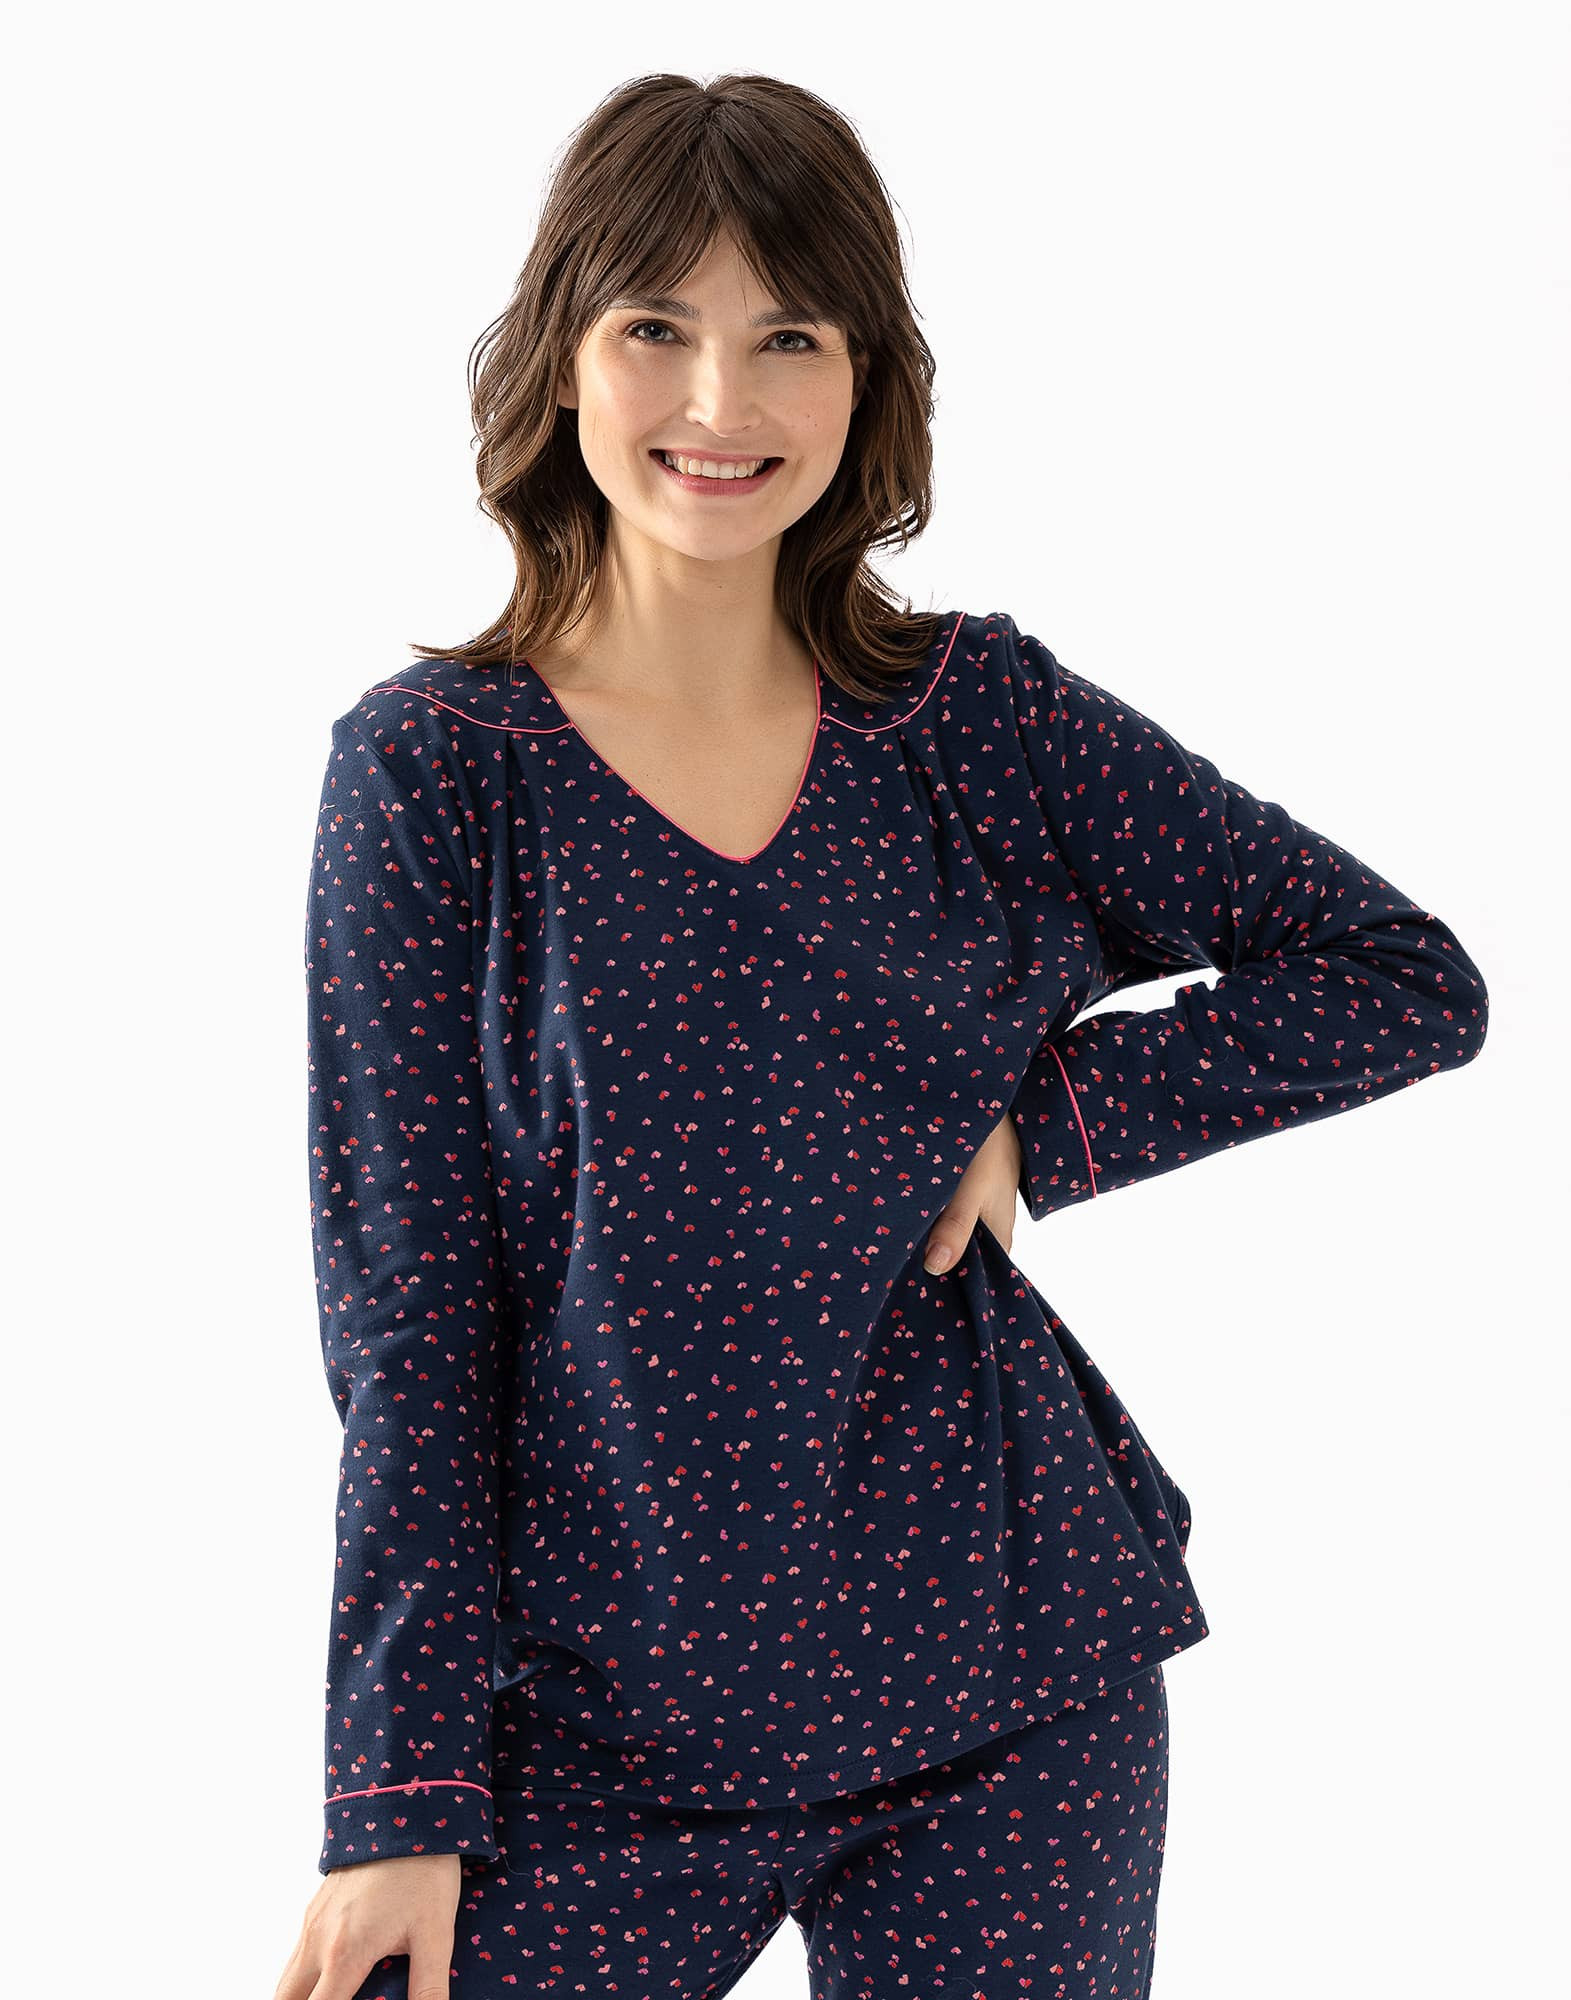 100% cotton interlock pyjamas HOLLY 602 navy blue